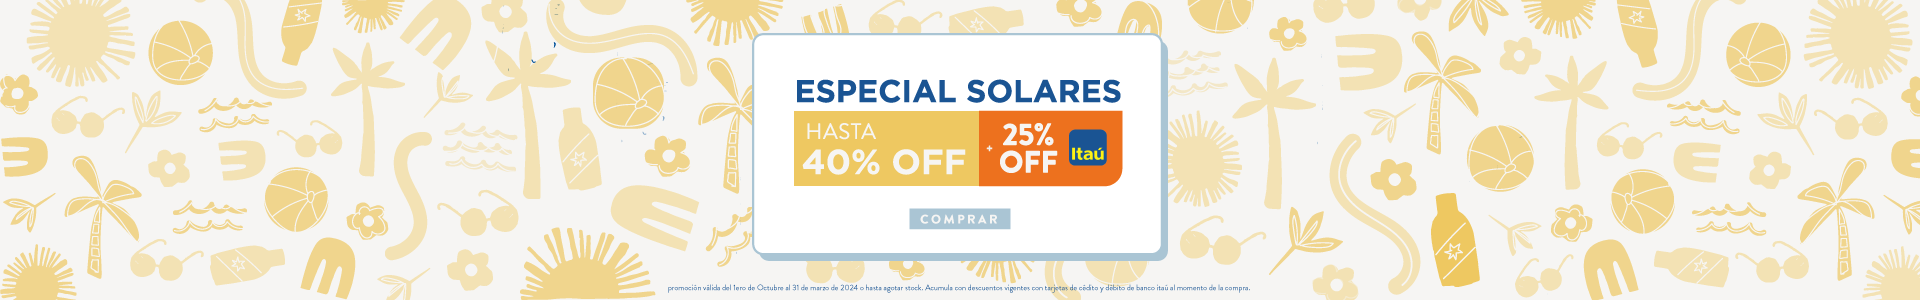 Especial Solares (25% Itaú)